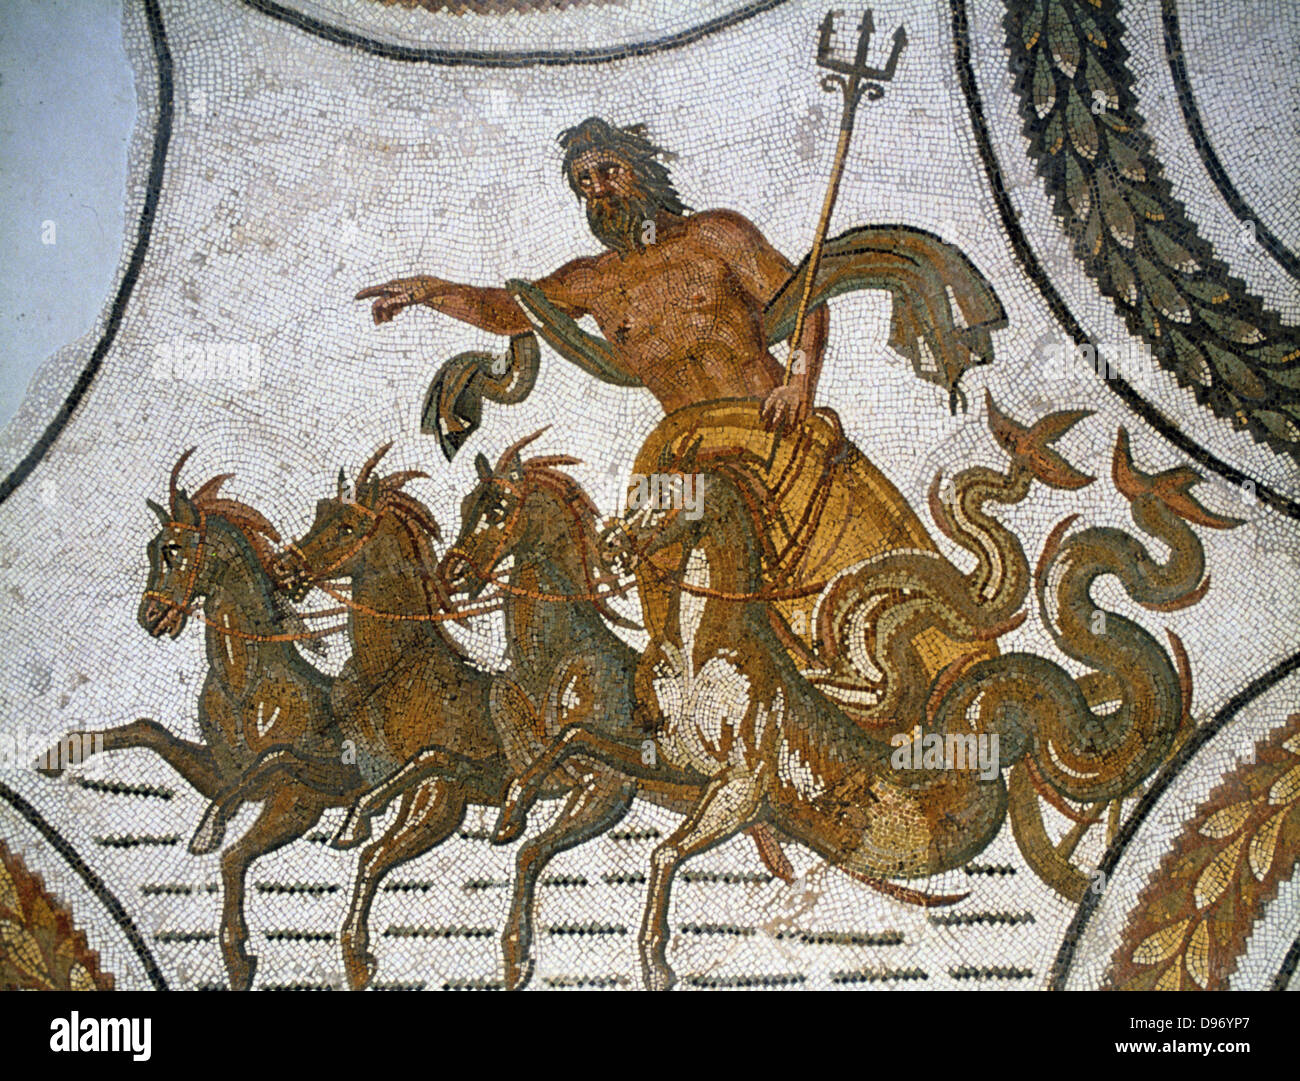 Triumph von Neptun. Neptun, dem Römischen Gott des Meeres (Griechisch: Poseidon) mit seinem Dreizack und Reiten in Wagen von Pferden mit Dolphin Schwanz gezogen. 2. Jahrhundert AD Mosaik von Sousse (Susah). Bardo-museum Tunis. Stockfoto